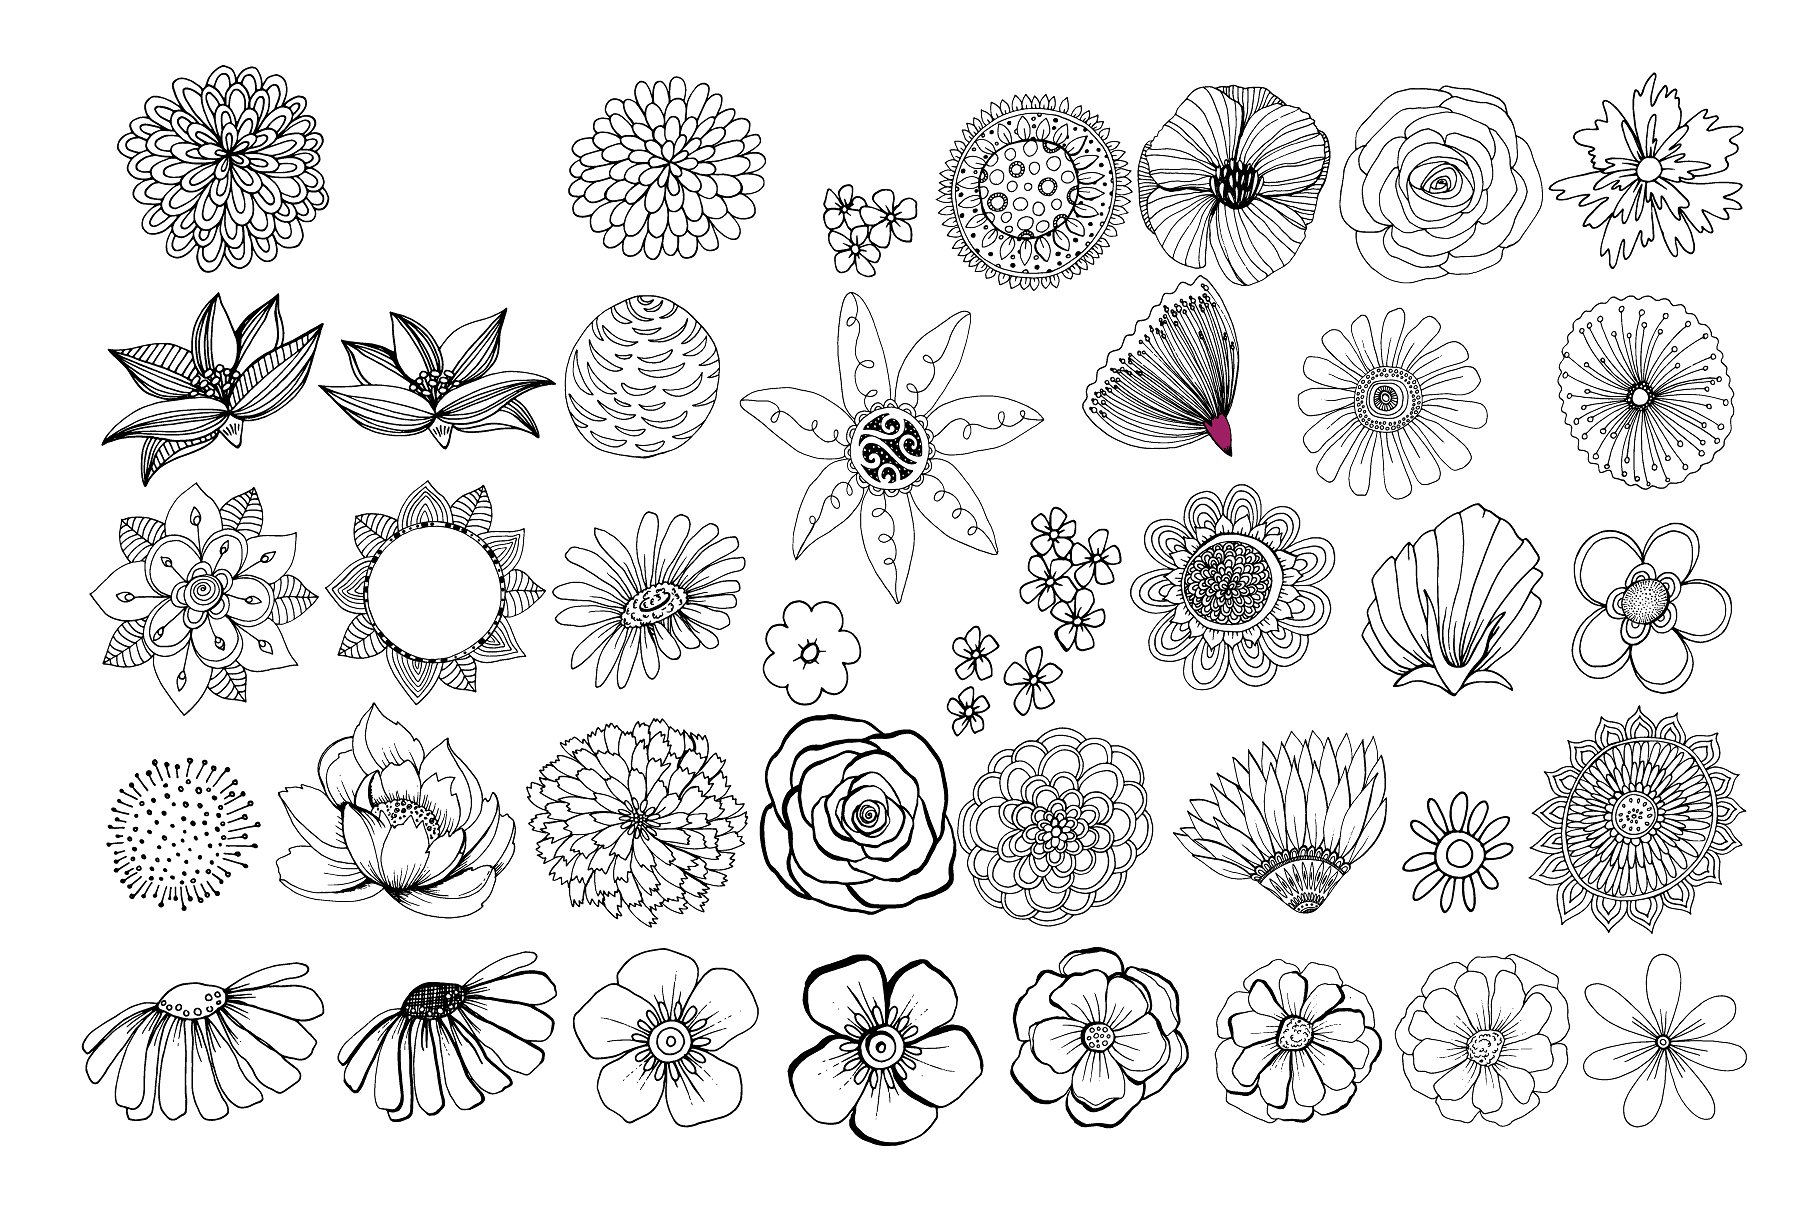 花卉艺术线条及花环素材 Flower Line Art & Floral Wreaths插图(1)